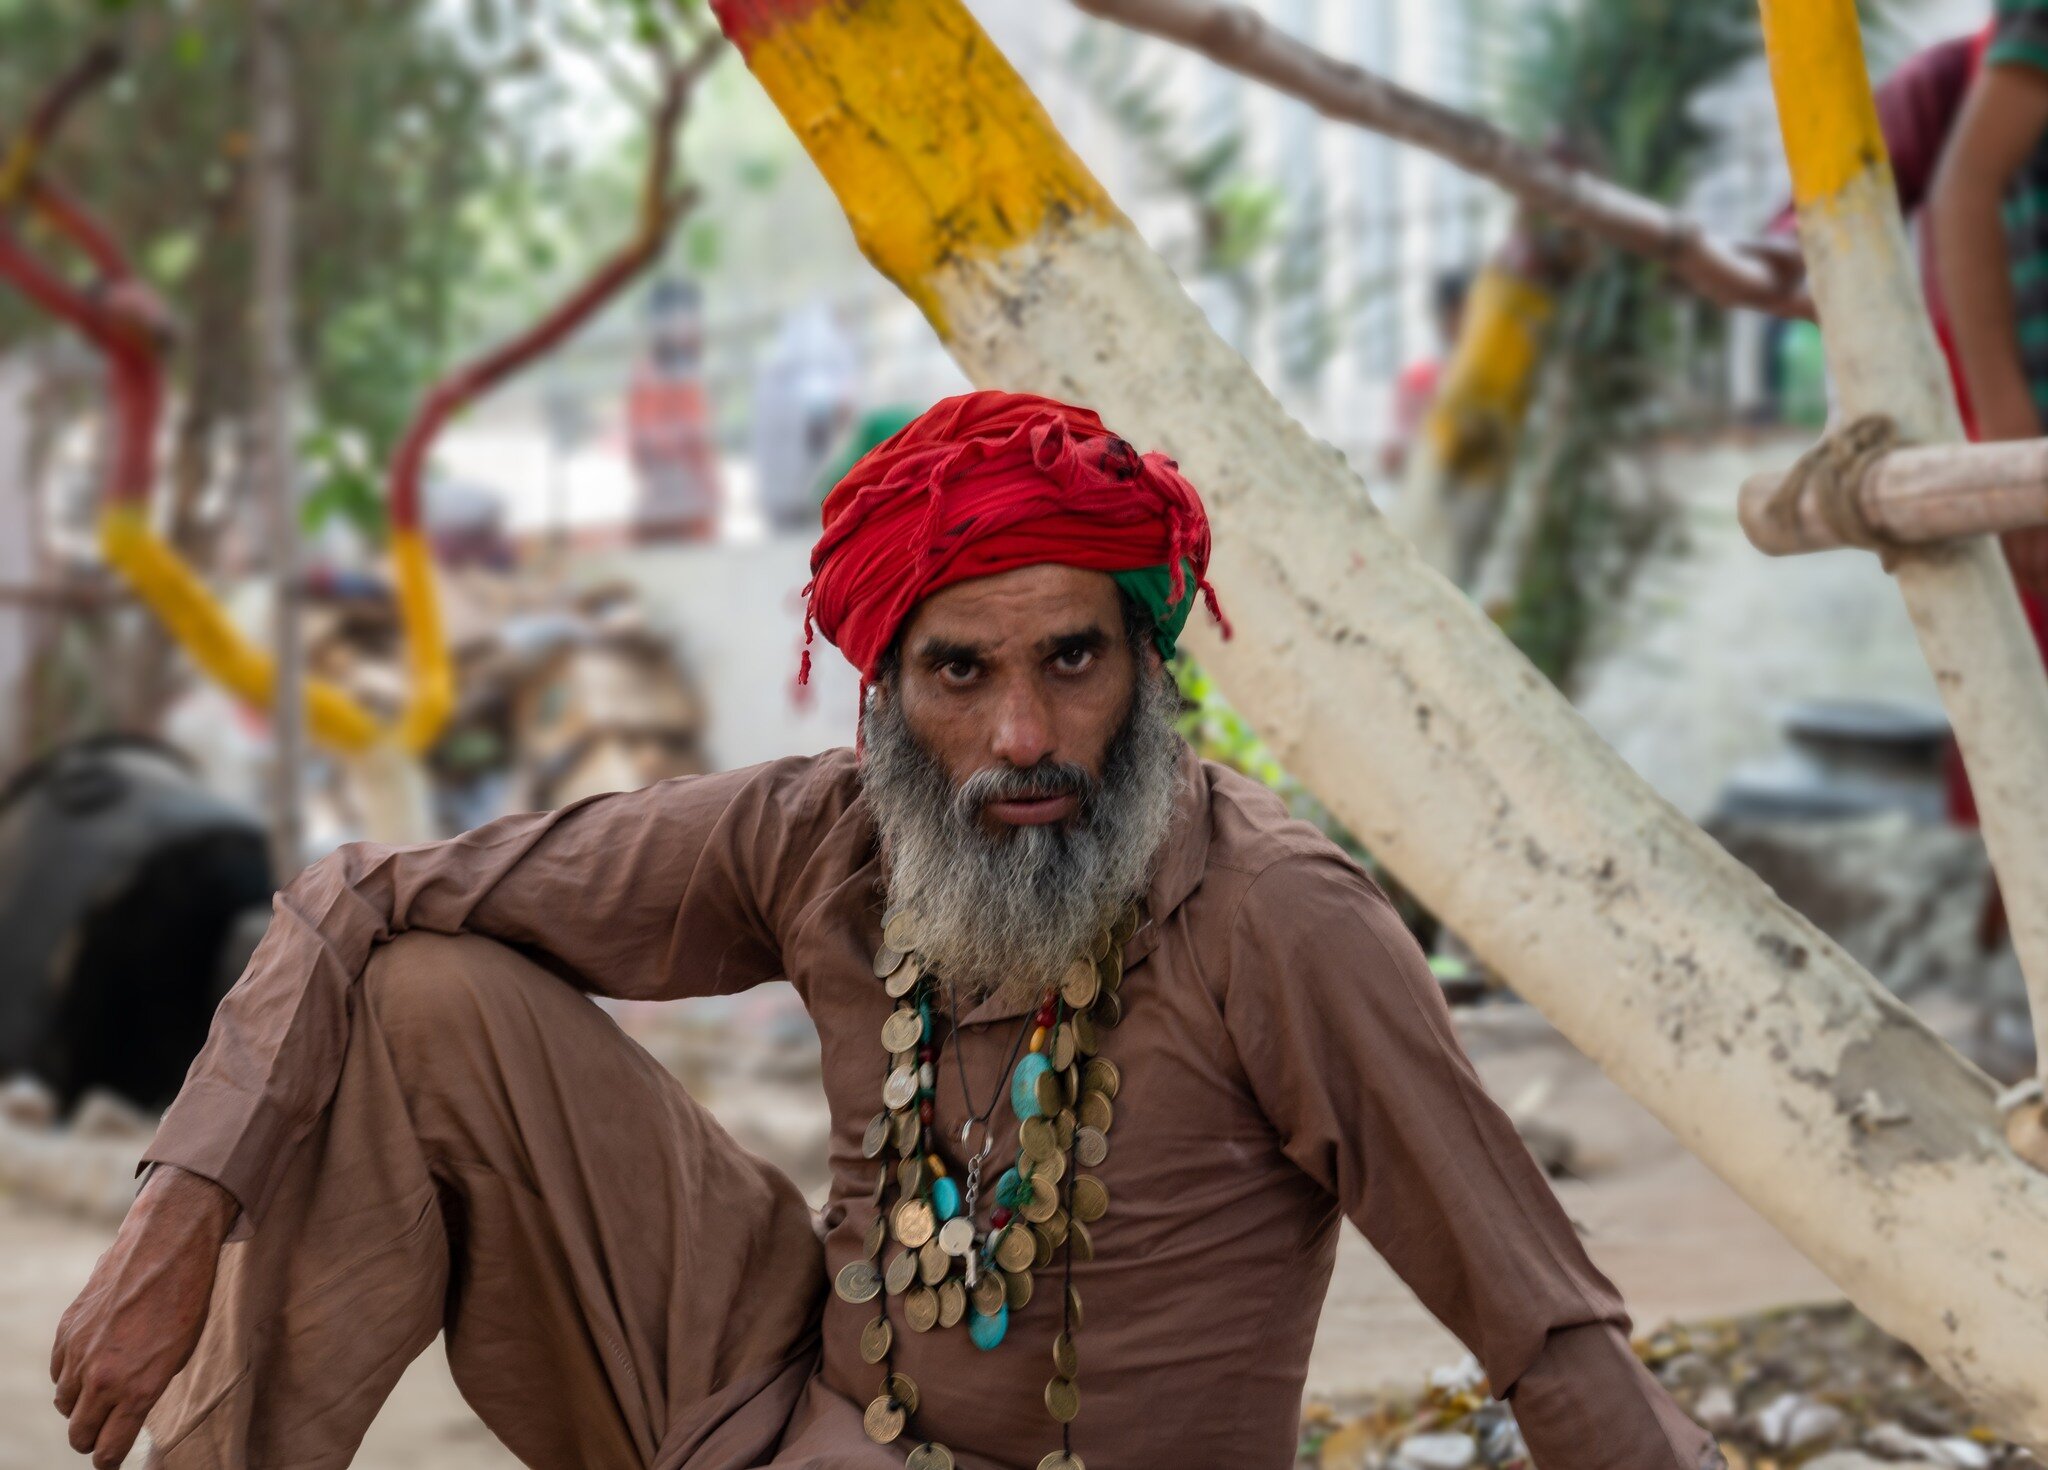 Mast Malang.Lahore Portrait Series. #Pakistan #lahore #portraits